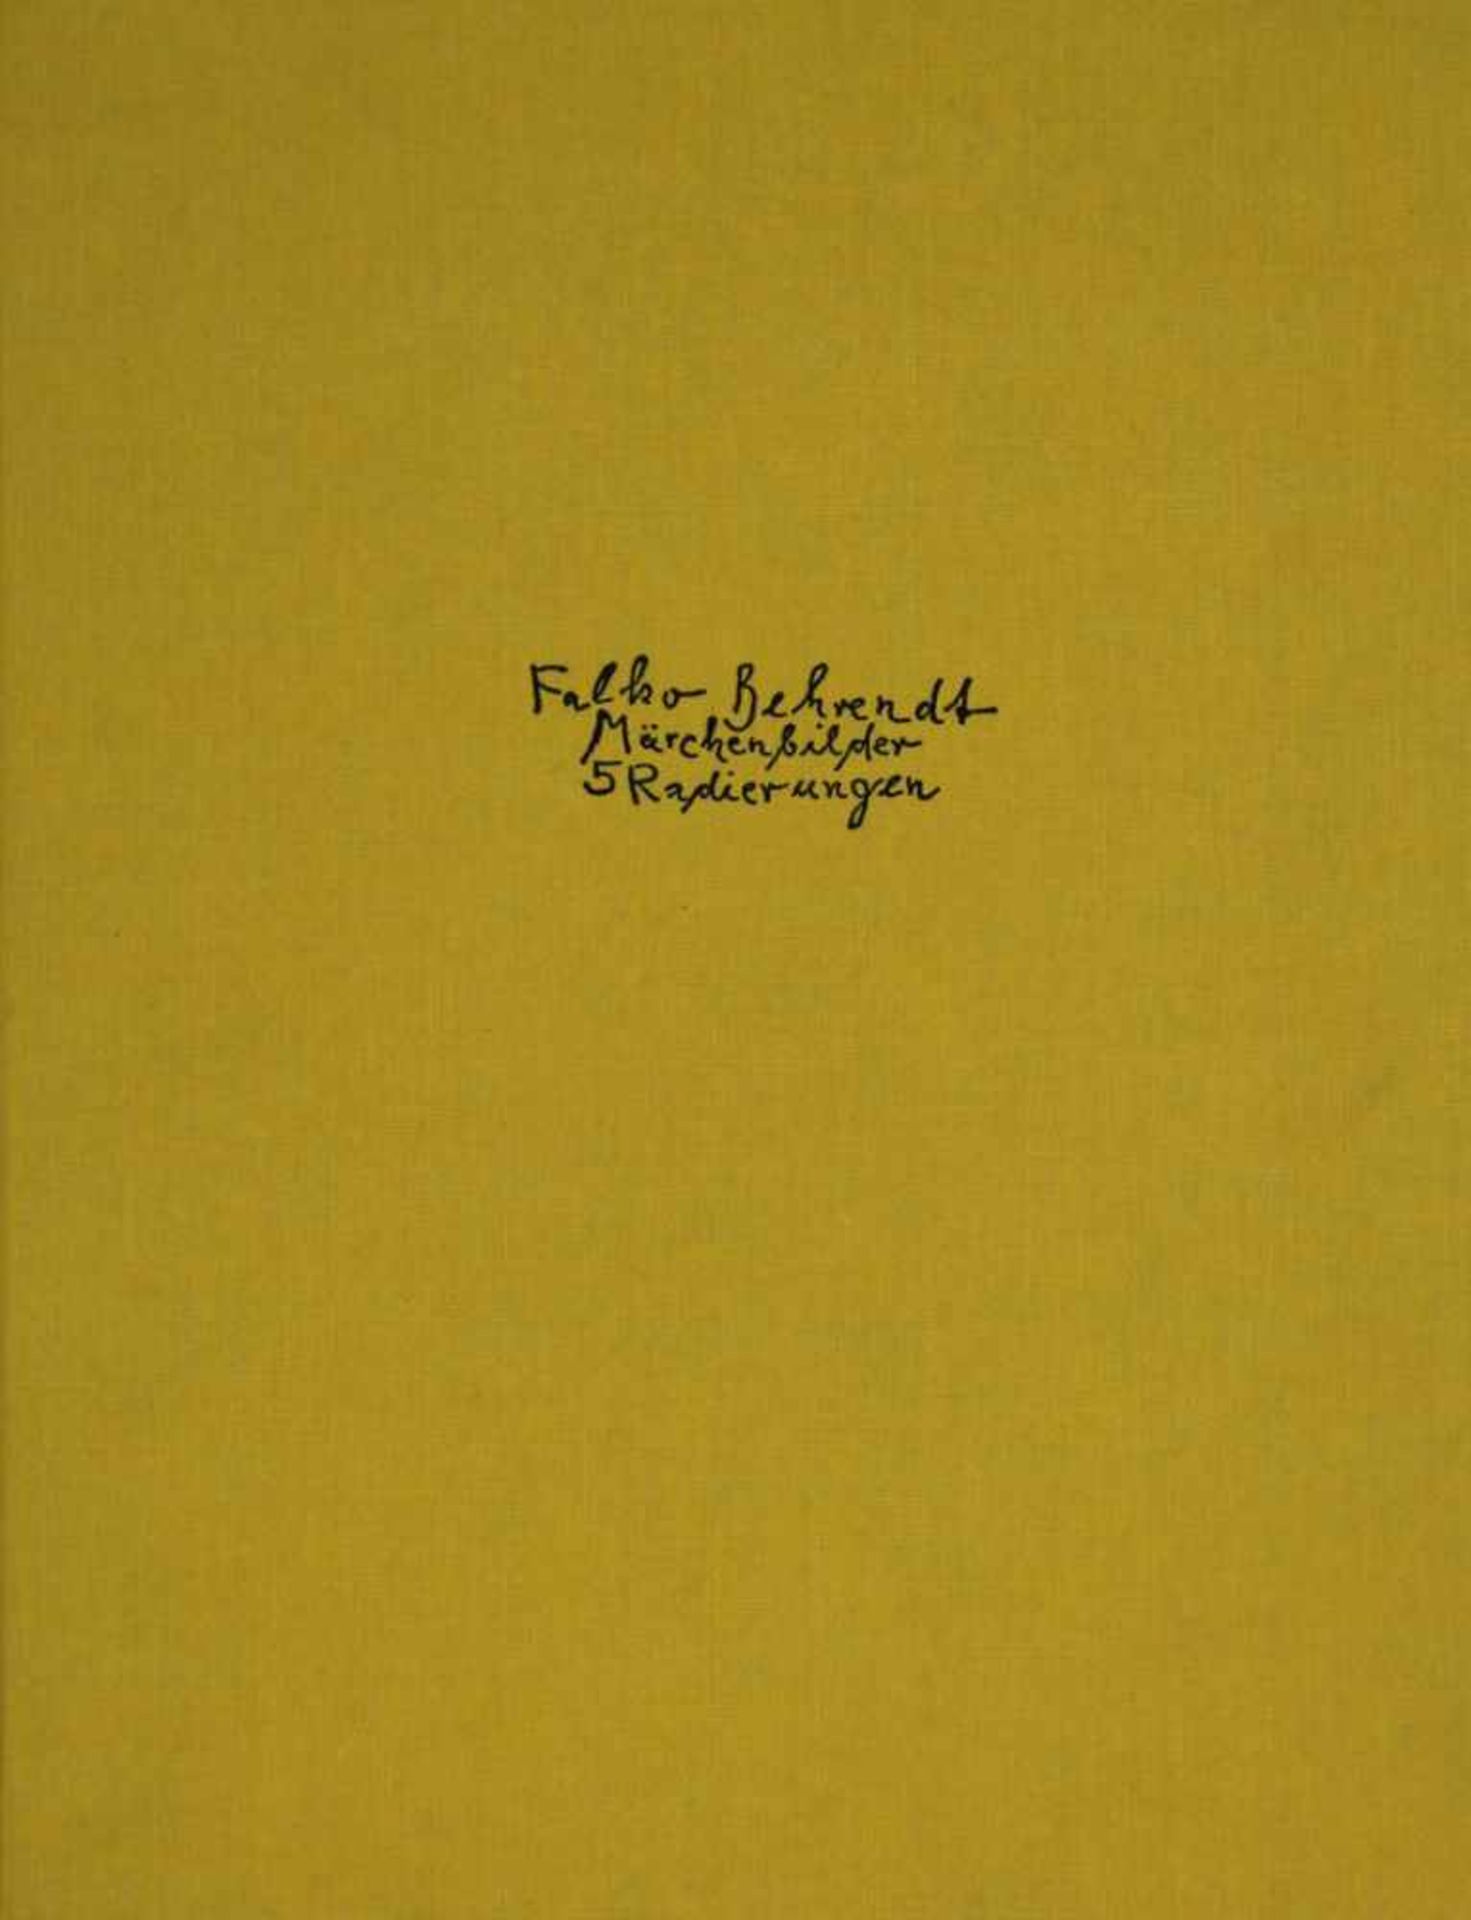 Behrendt, Falko. (Geb. 1951):Märchenbilder. 5 Radierungen. Herausgeber Jürgen Wenzel. Burgstädtel,